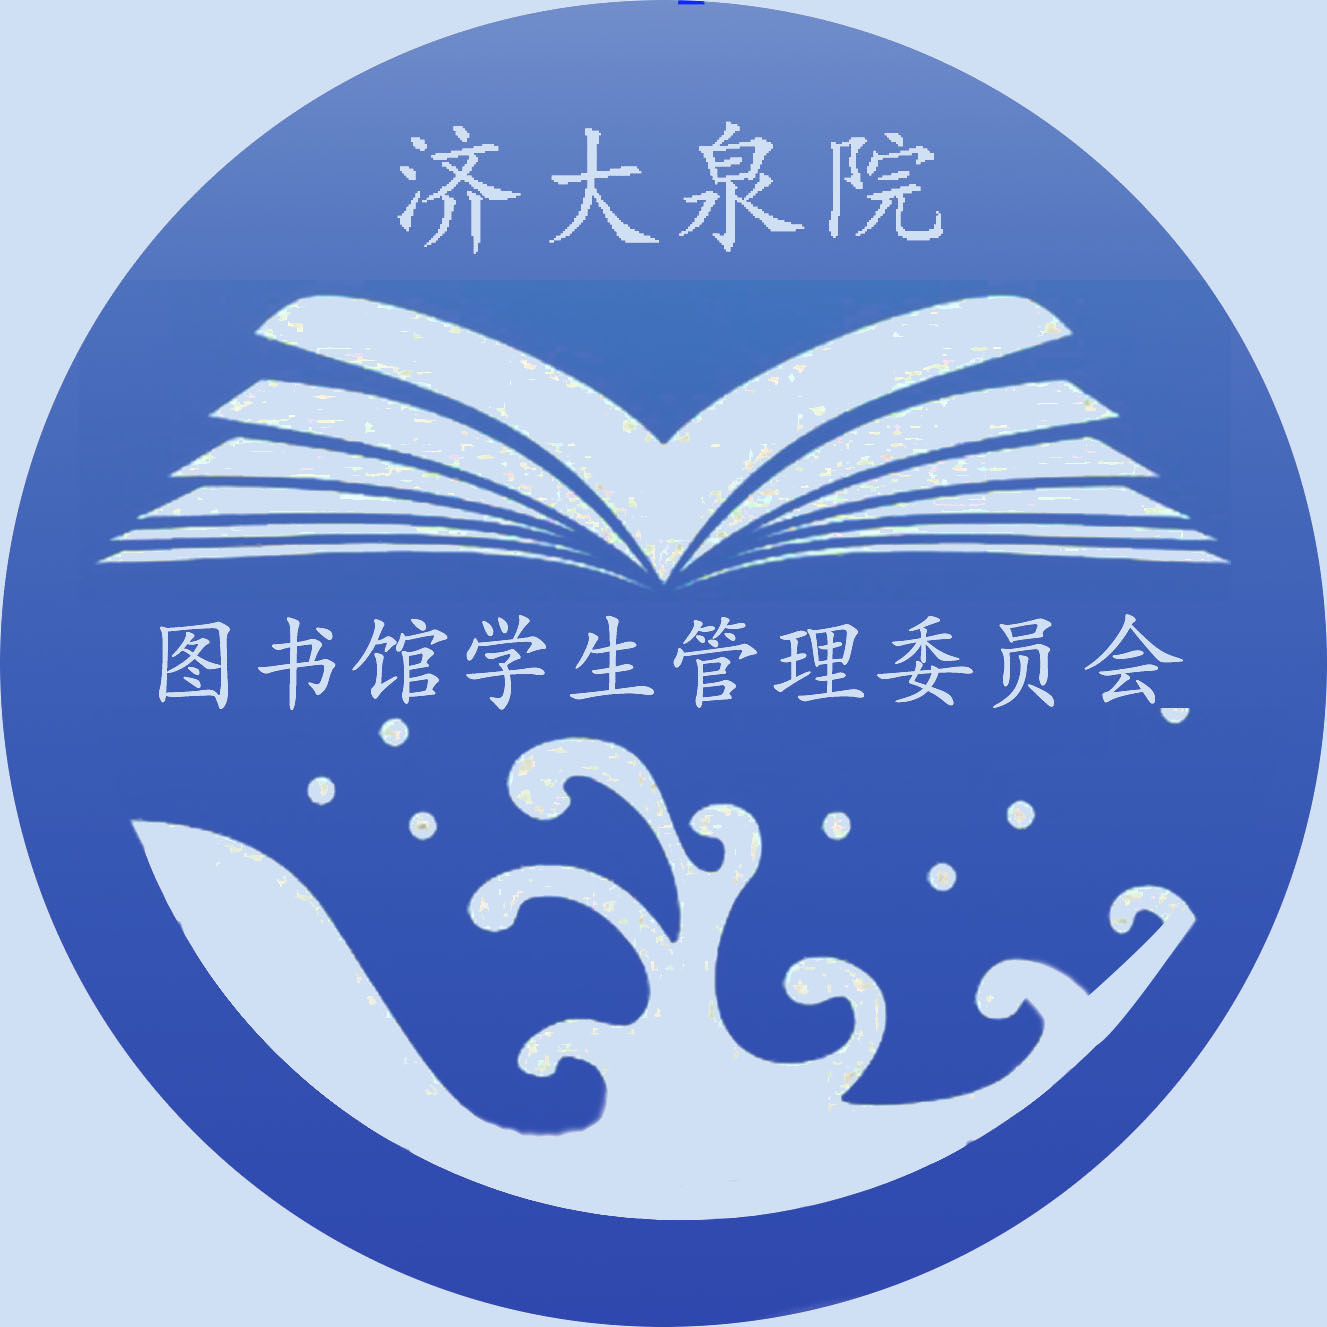 濟南大學泉城學院圖書館學生管理委員會